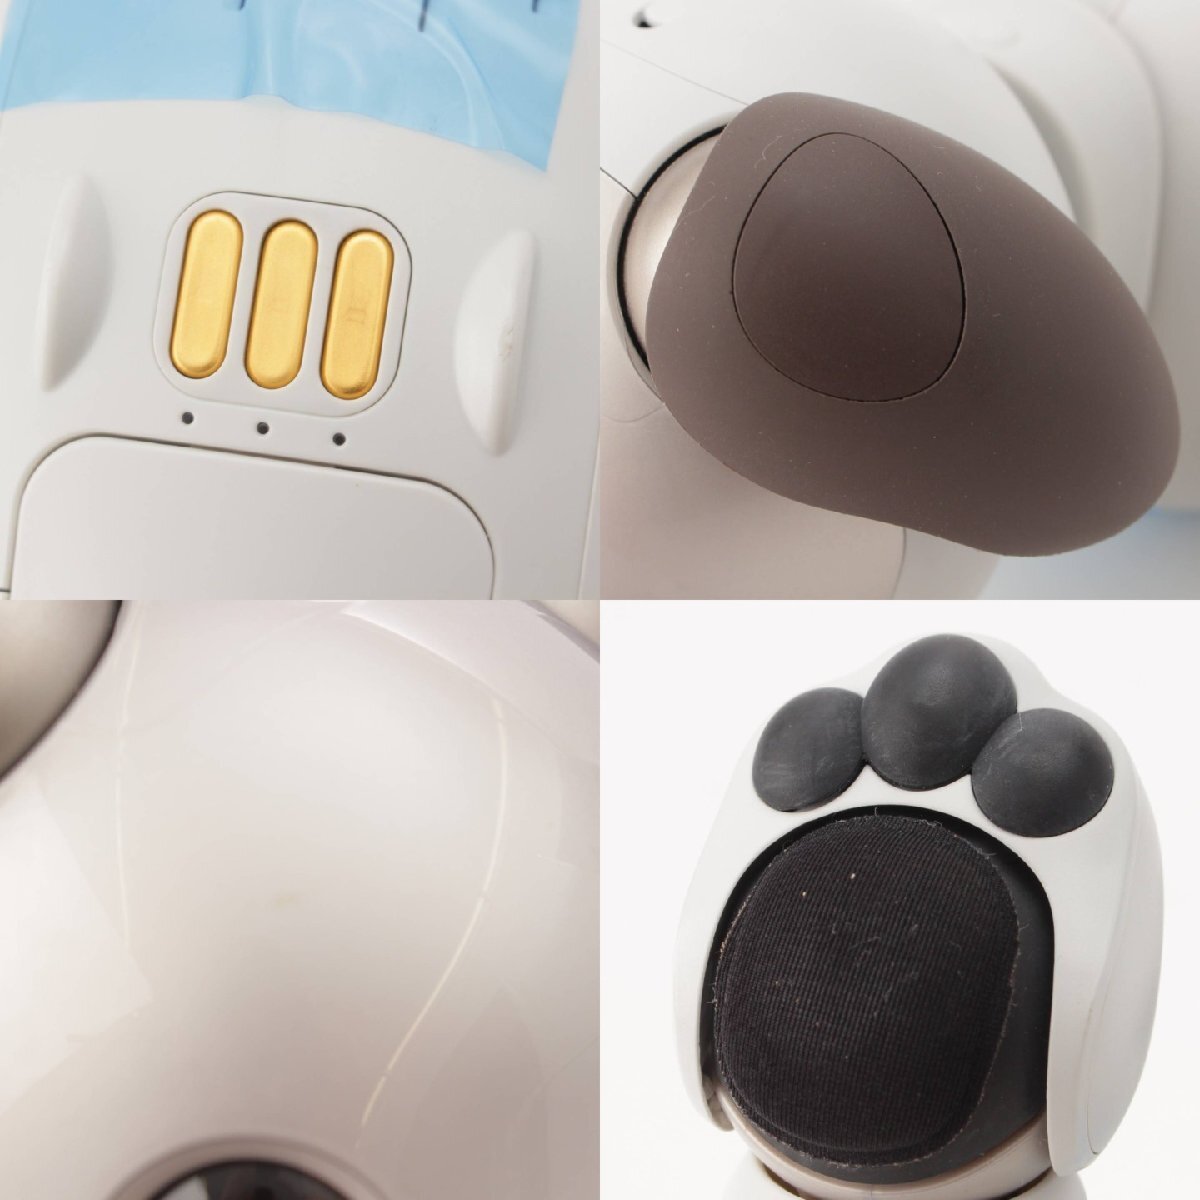 [ Sony ]SONY aibo dog type virtual pet robot ERS-1000 Basic white [ used ][ regular goods guarantee ]201684